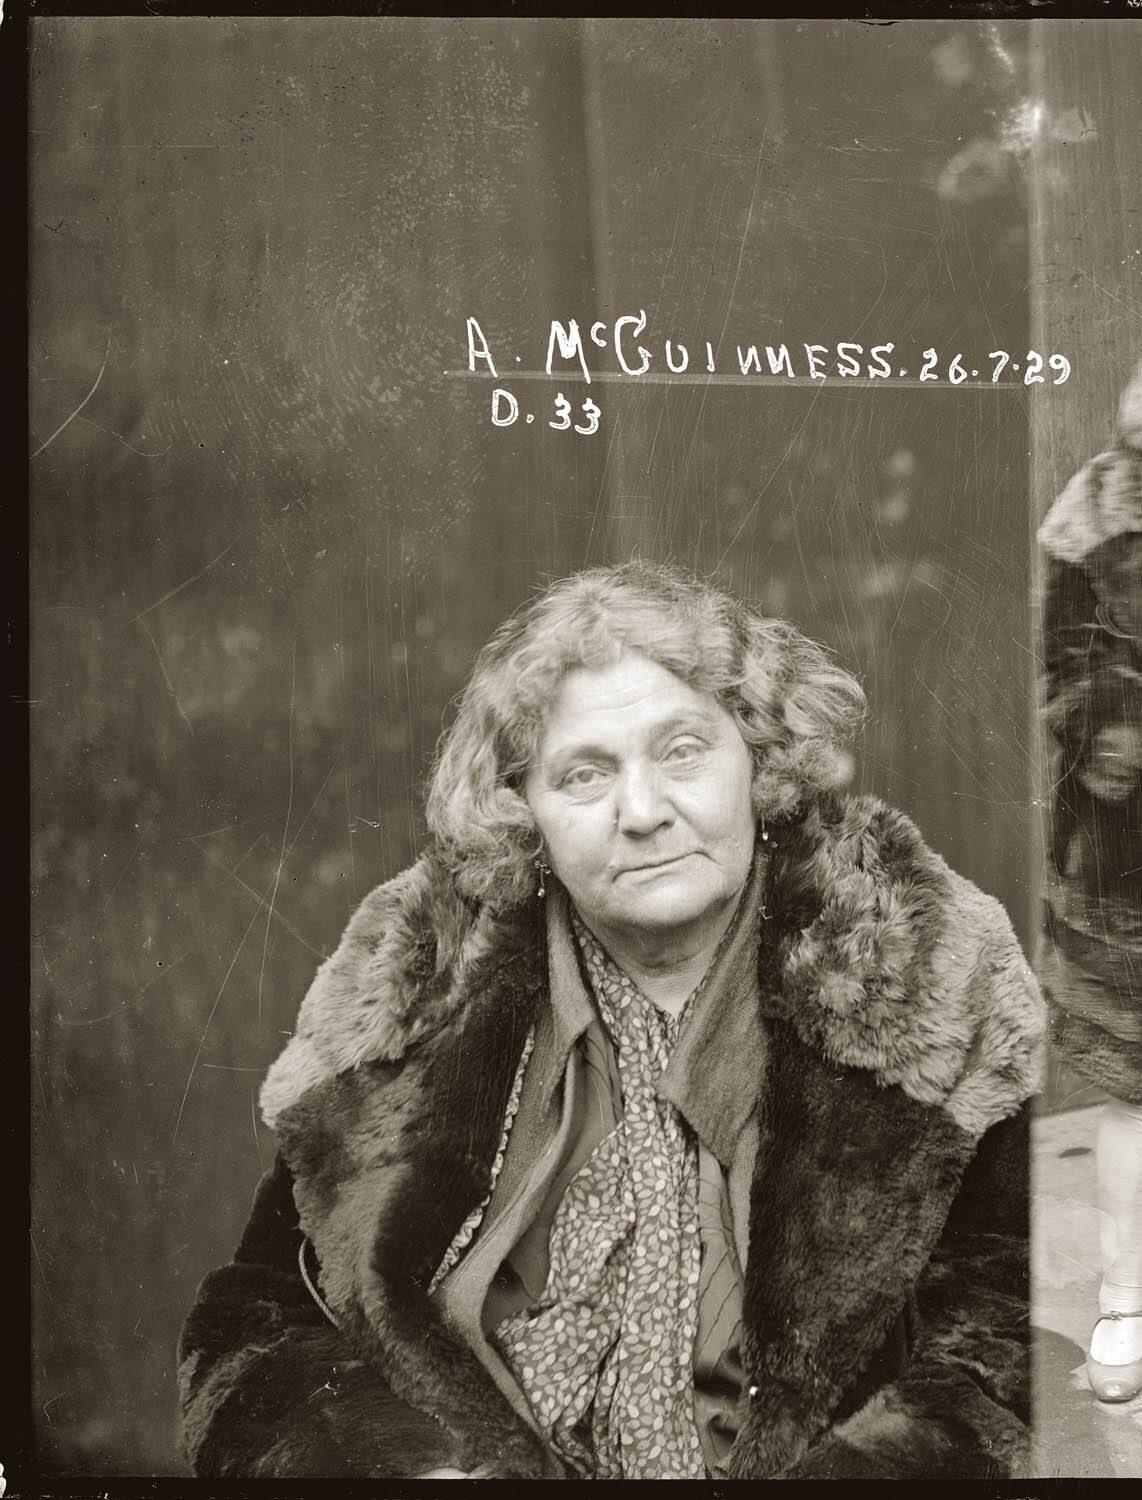 Адам Макгиннесс, торговля кокаином, её дочь получила аналогичное обвинение, полицейские описывают Макгиннес как самую злую женщину Сиднея, 1929 год. Архив судебной фотографии полиции Нового Южного Уэльса